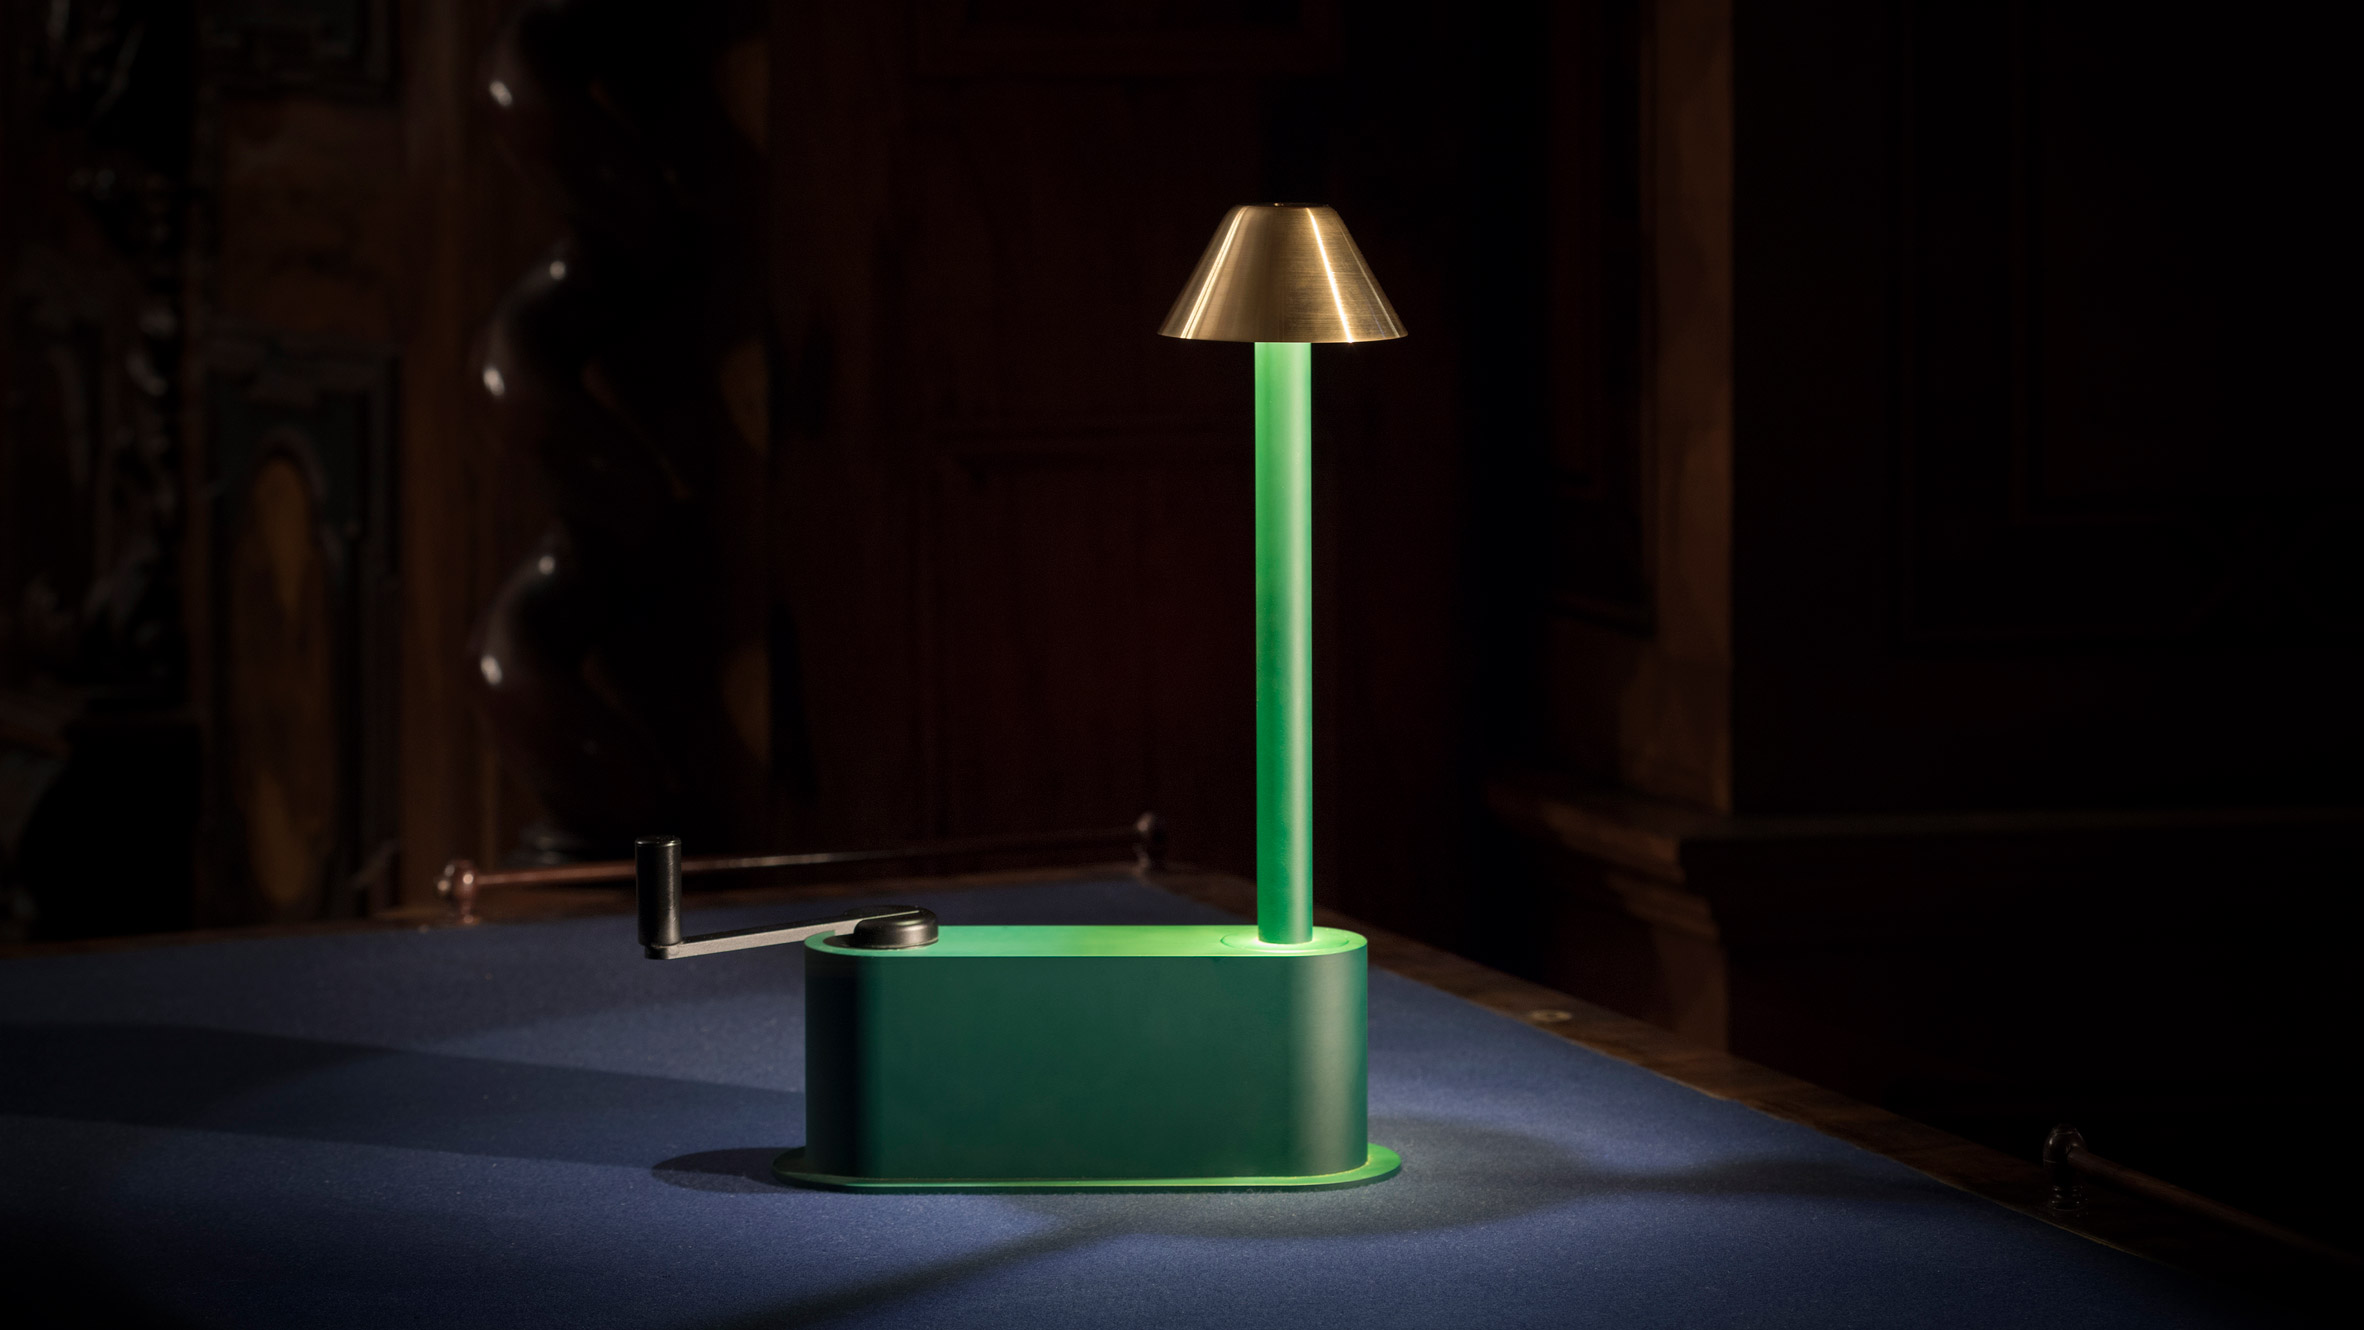 Klemens Schillinger creates Off-Grid Lamp for remote Austrian castle